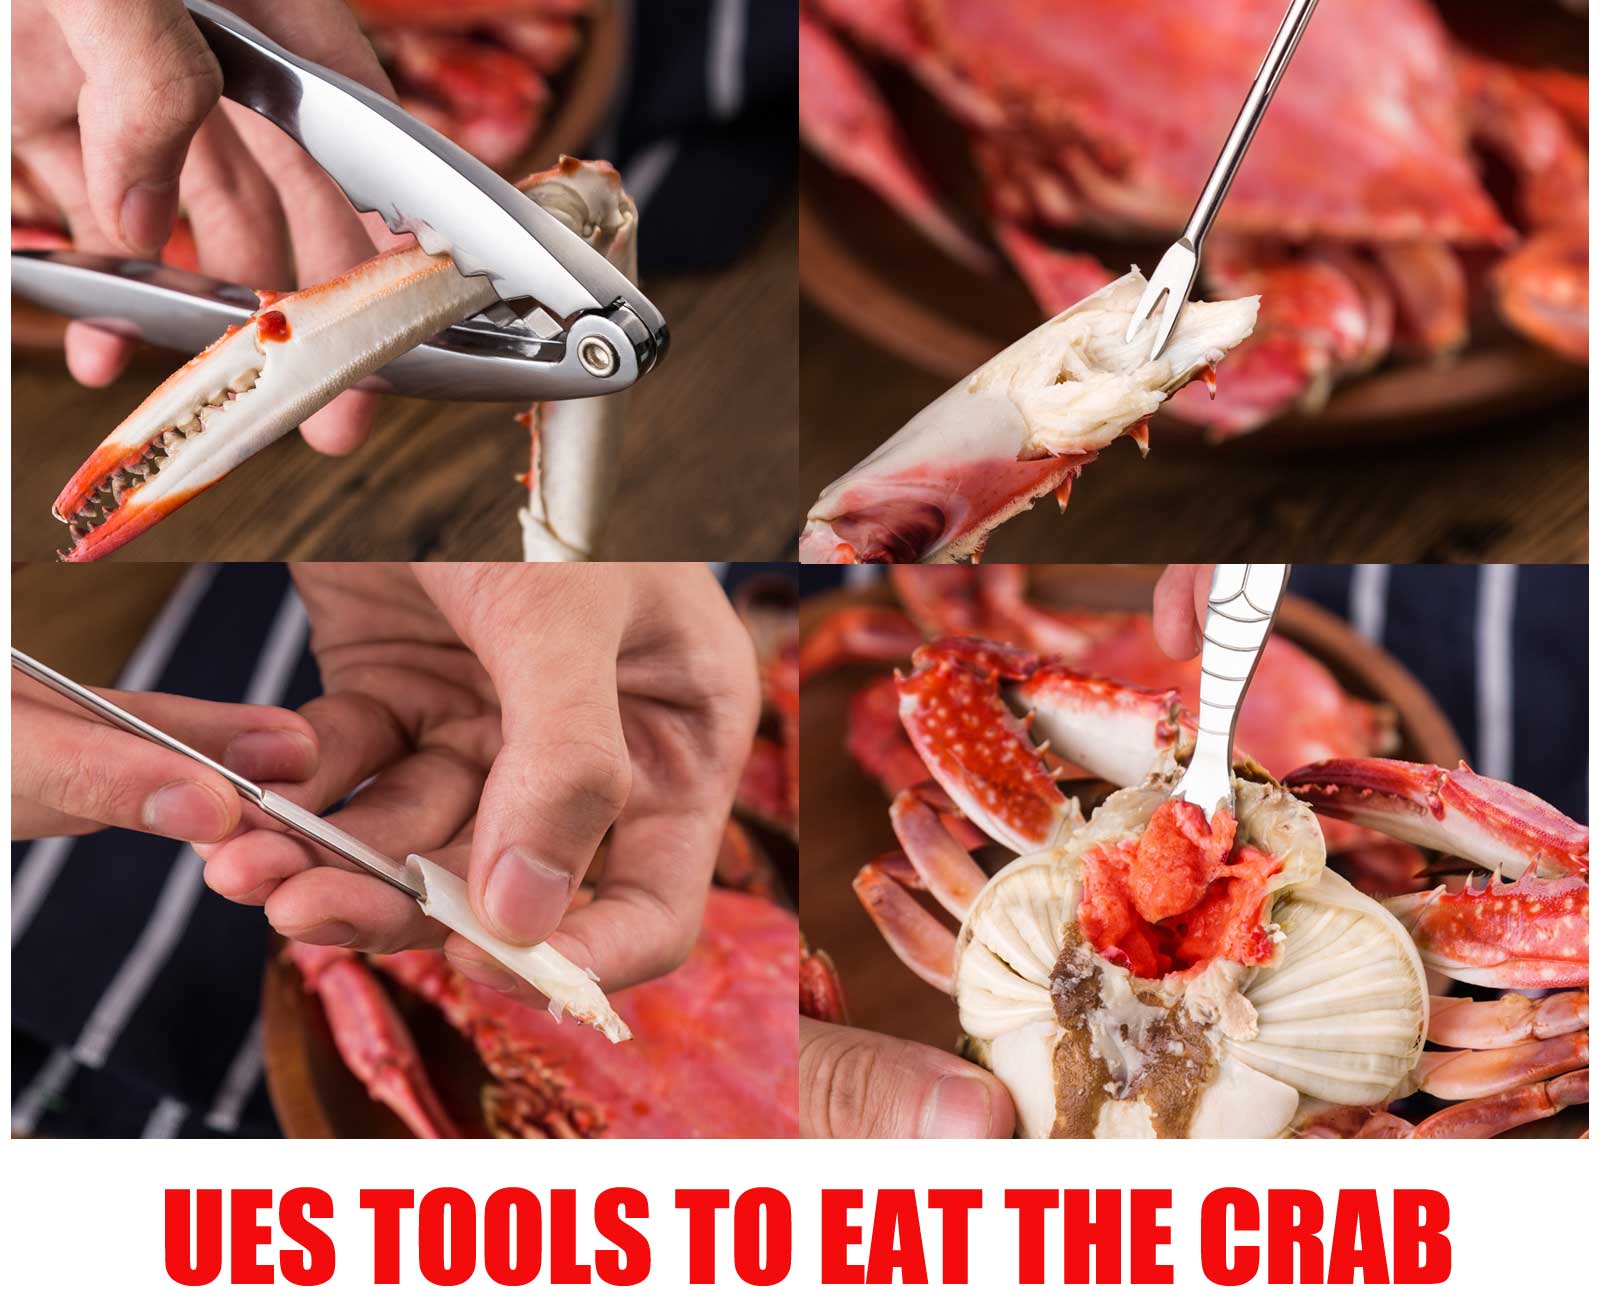 Crab Eating Tools Crab Lobster Crackers Crab Leg Shellers Crab Picks Seafood Tools Set 12PCS Kitchen Accessories 